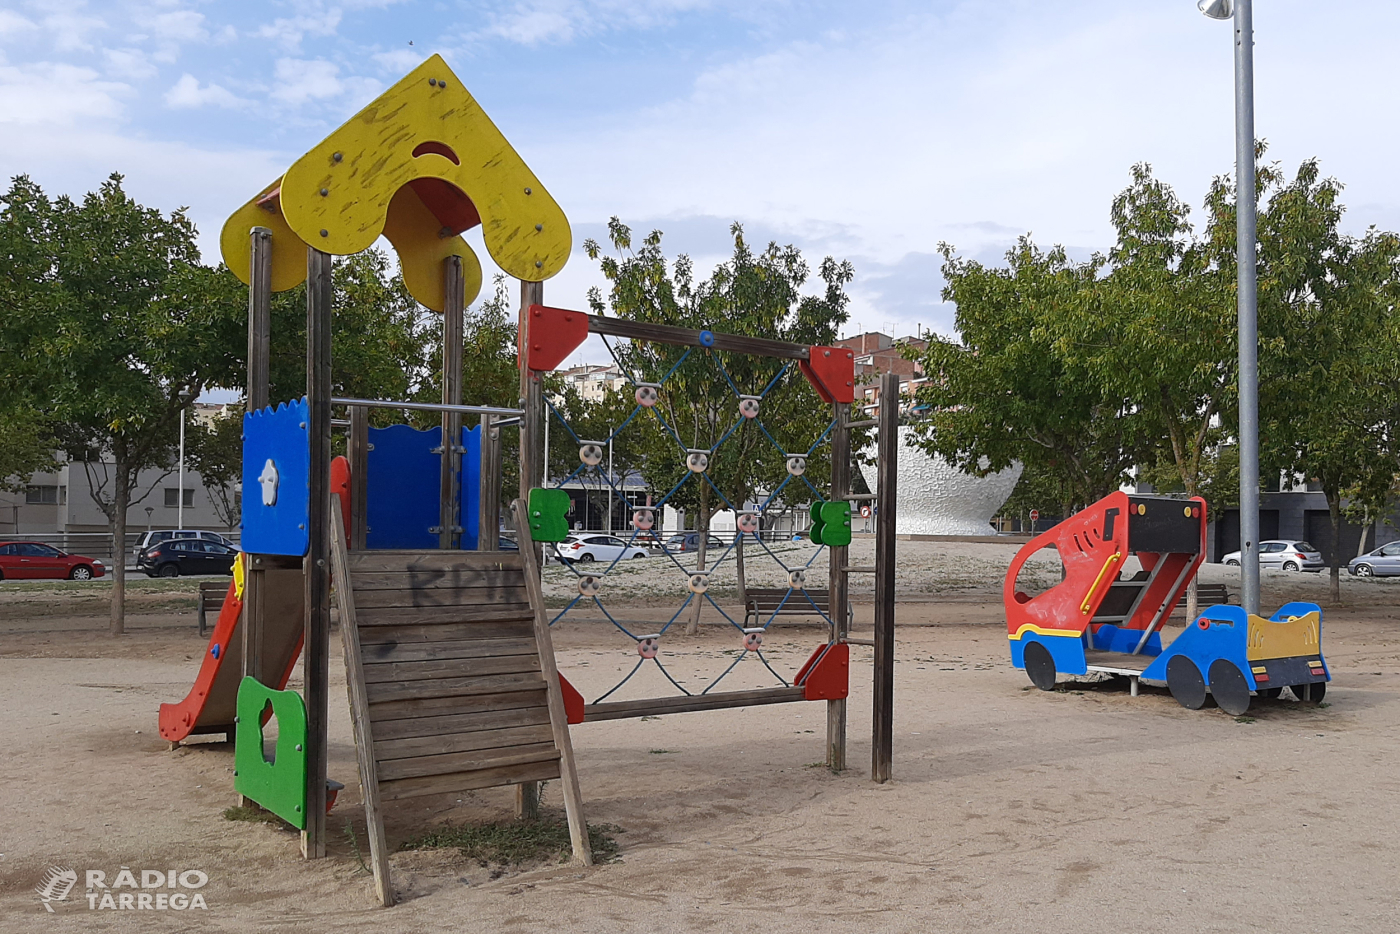 L’Ajuntament de Tàrrega treu a licitació la millora dels parcs de jocs infantils al nucli urbà i als pobles del municipi